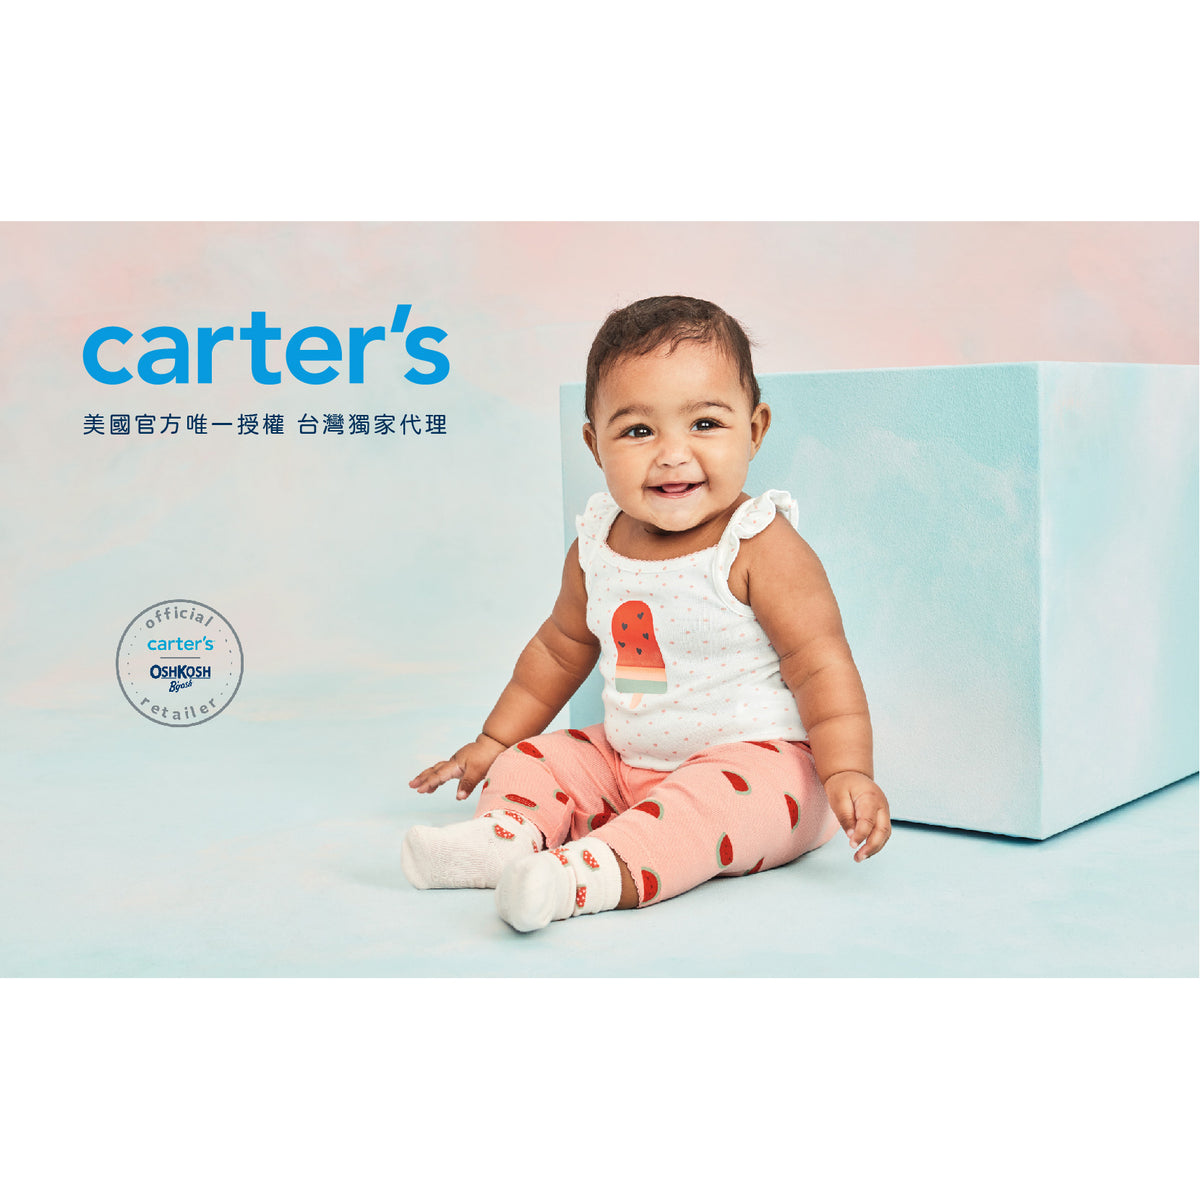 Carter's 紫色小碎花內搭褲(6M-24M)